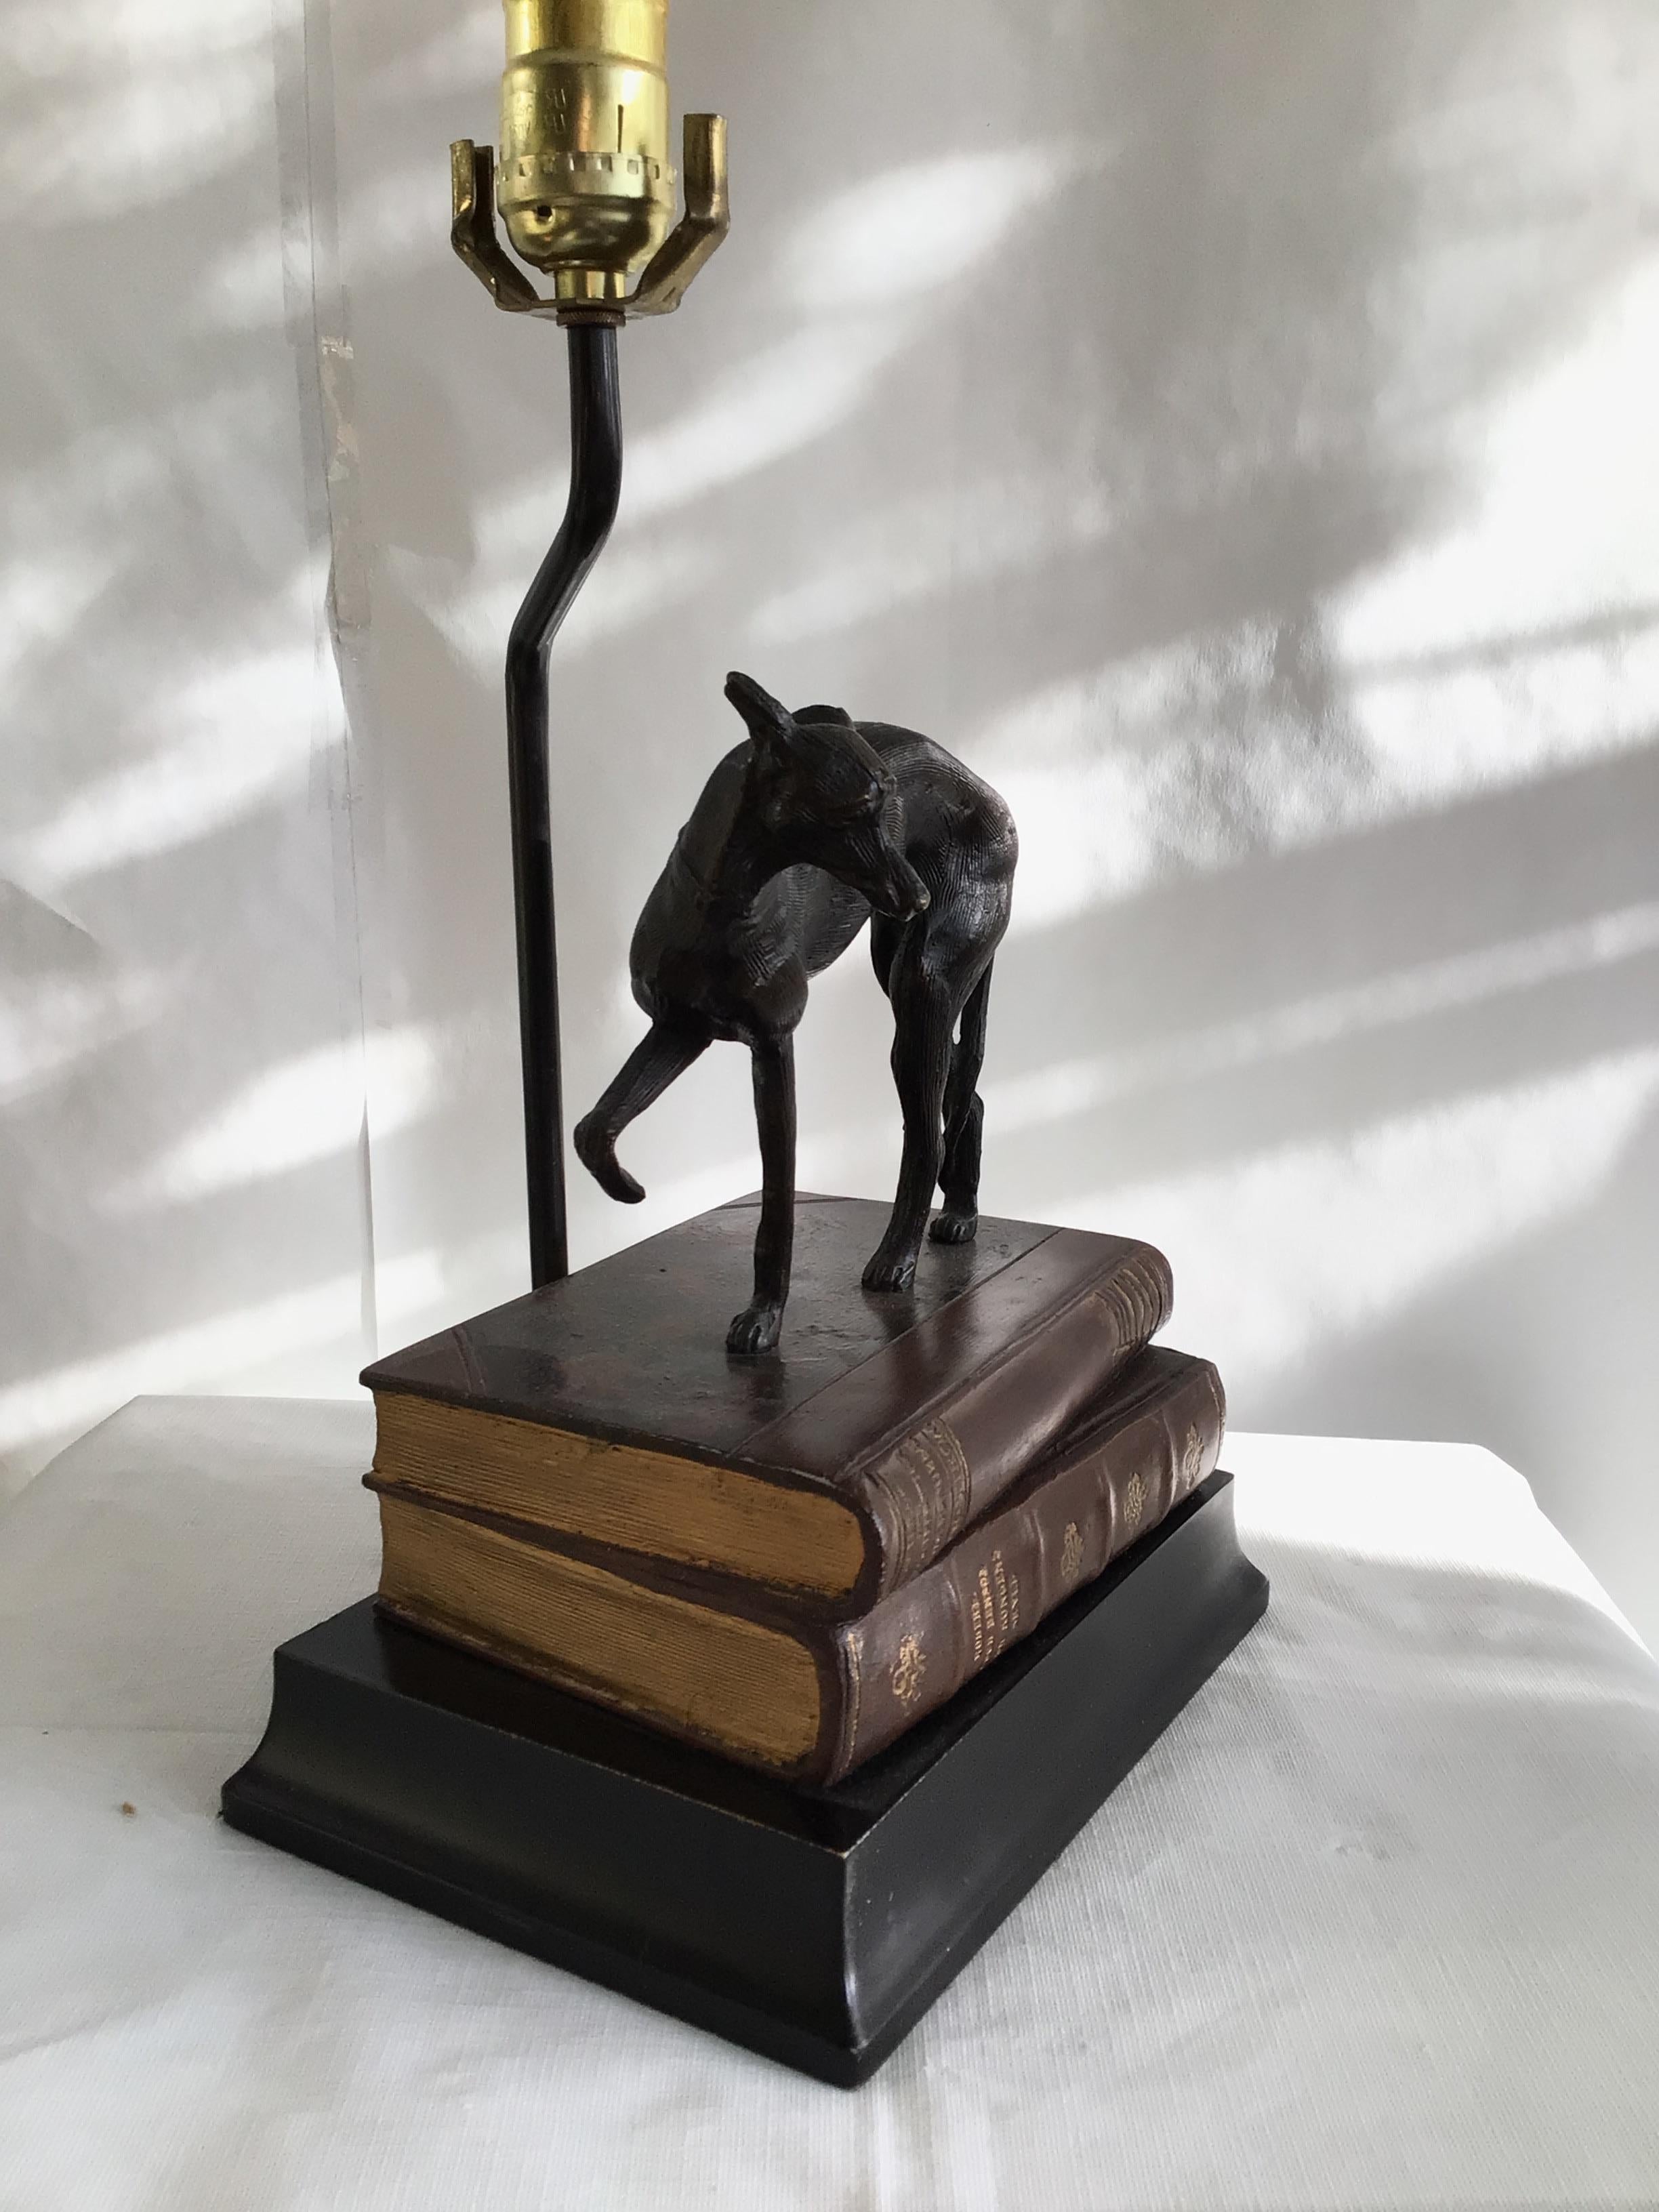 1970 Métal Whippet / Greyhound Dog Standing on Stack of Books Lampe sur base en bois (peinte)
La hauteur est de 15